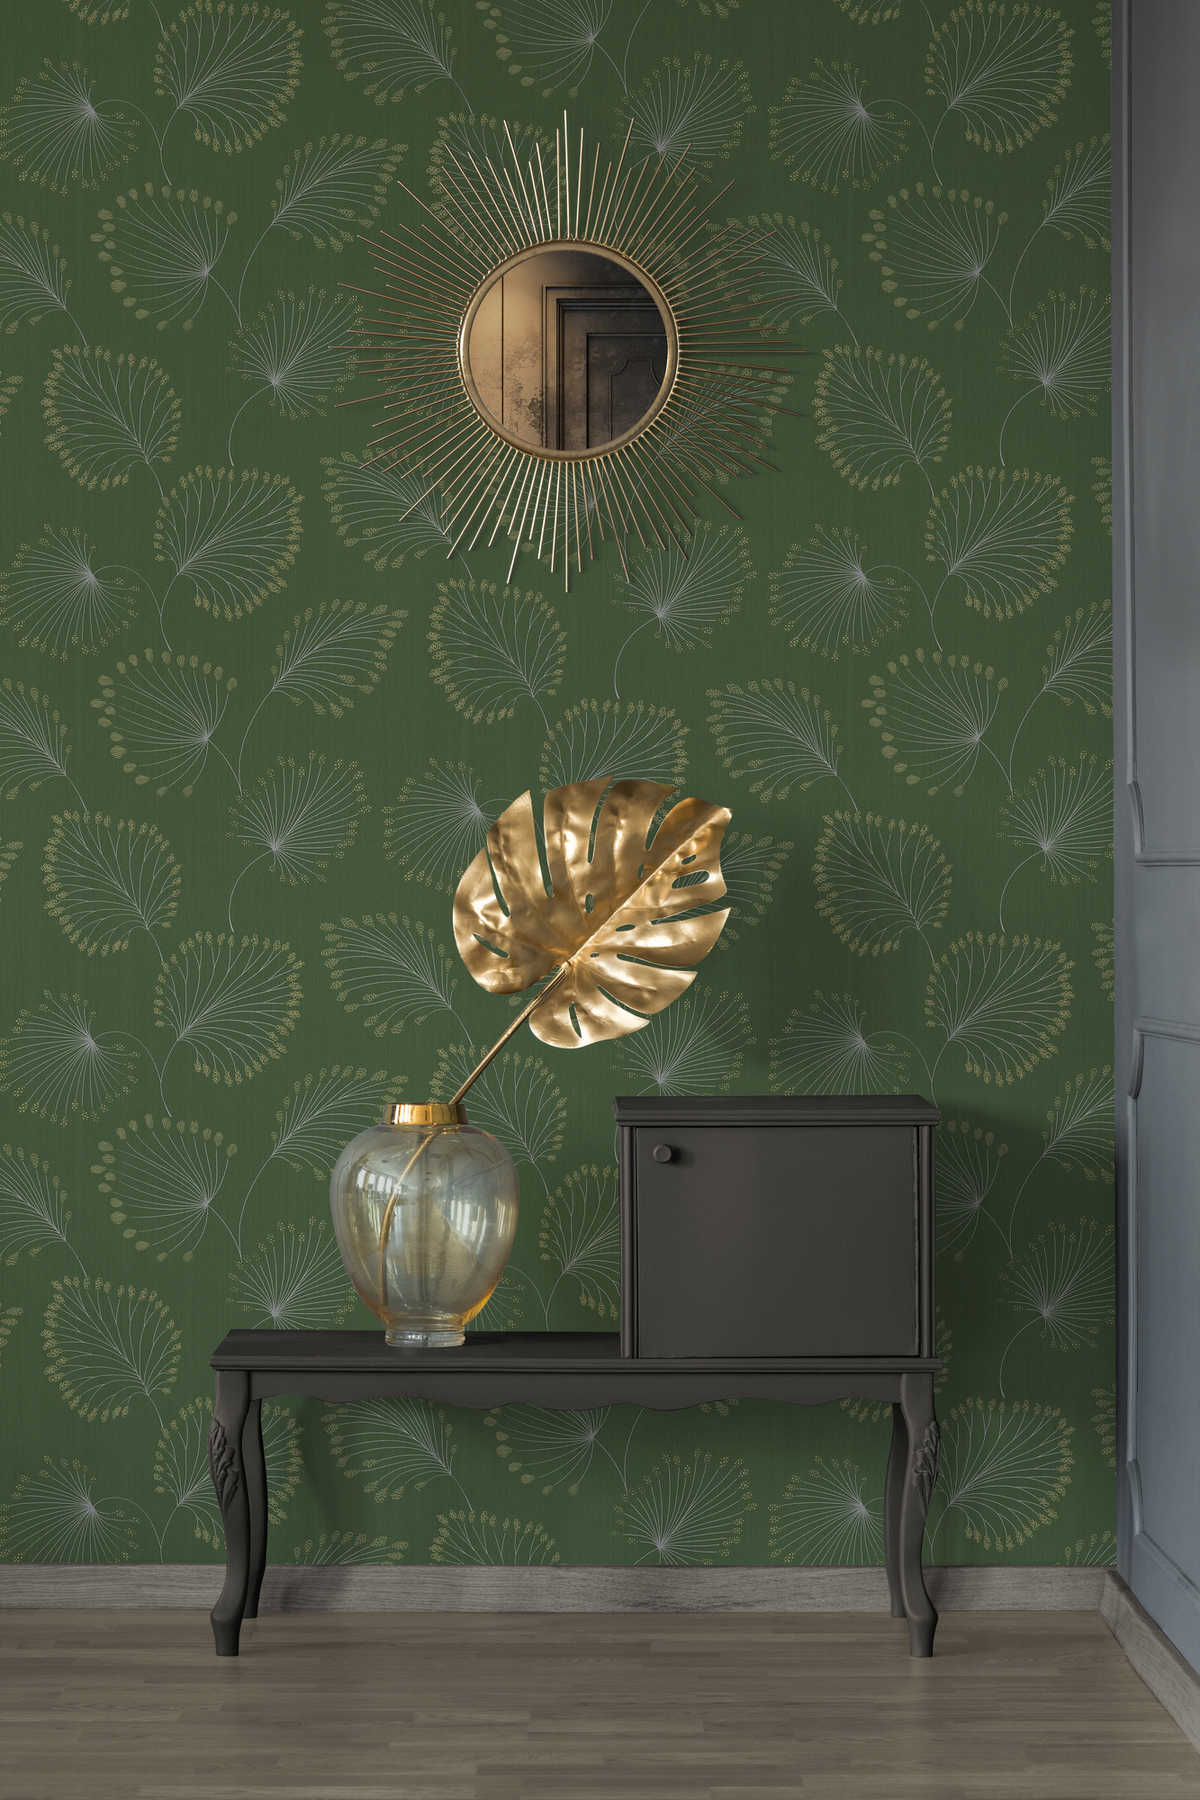             Retro behang met jaren 50 design & goudeffect - groen, metallic
        